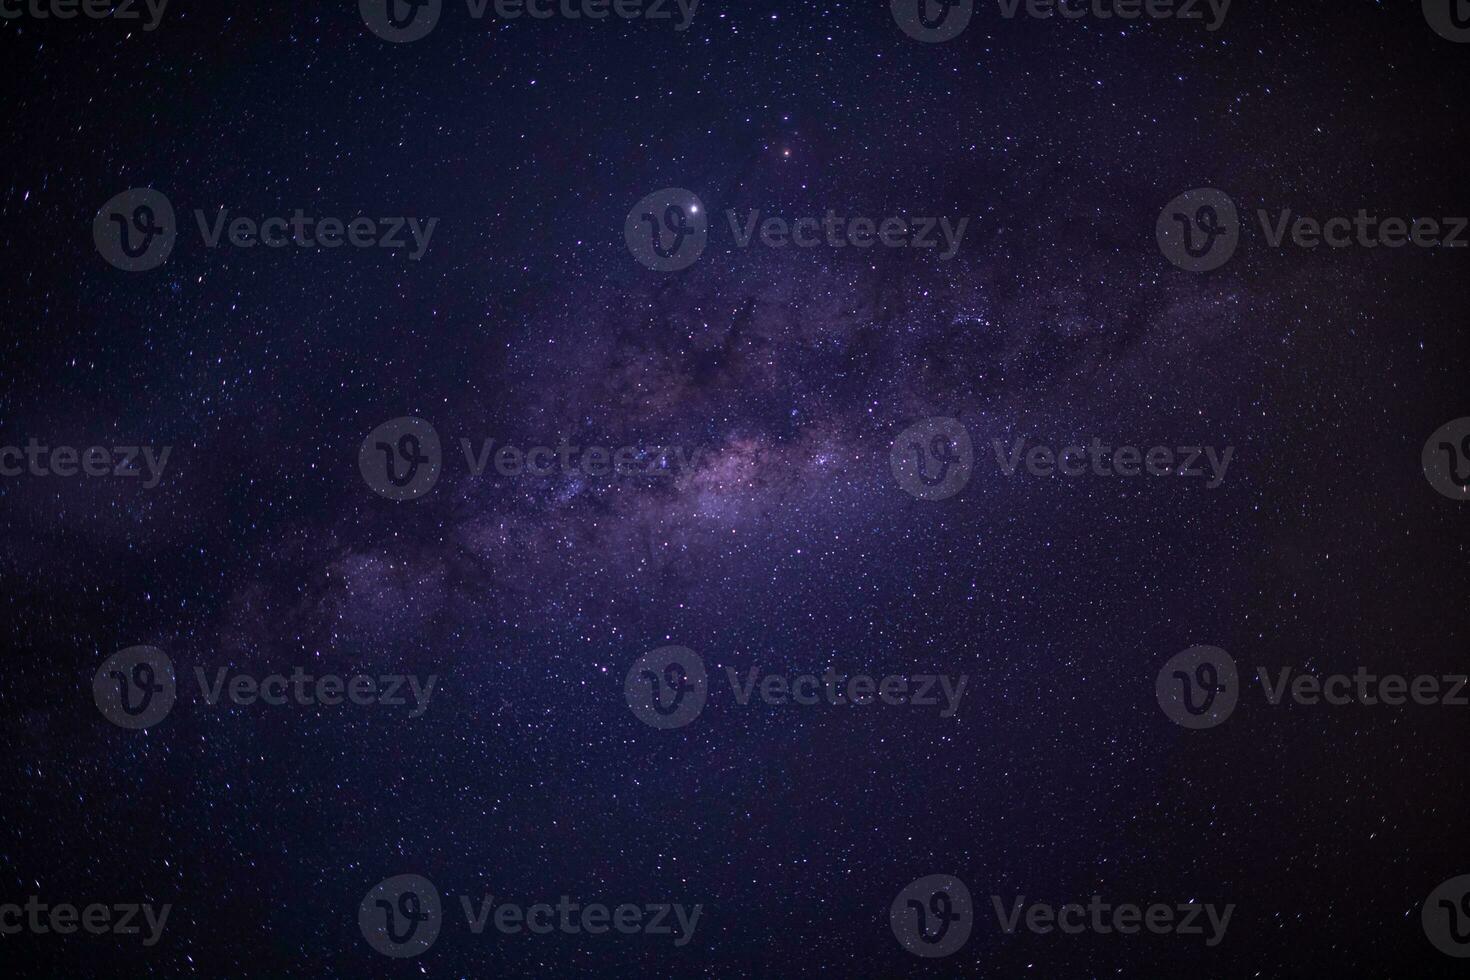 panorama vue univers photo de l'espace de la galaxie de la voie lactée avec des étoiles sur un fond de ciel nocturne. la voie lactée est la galaxie qui contient notre système solaire.